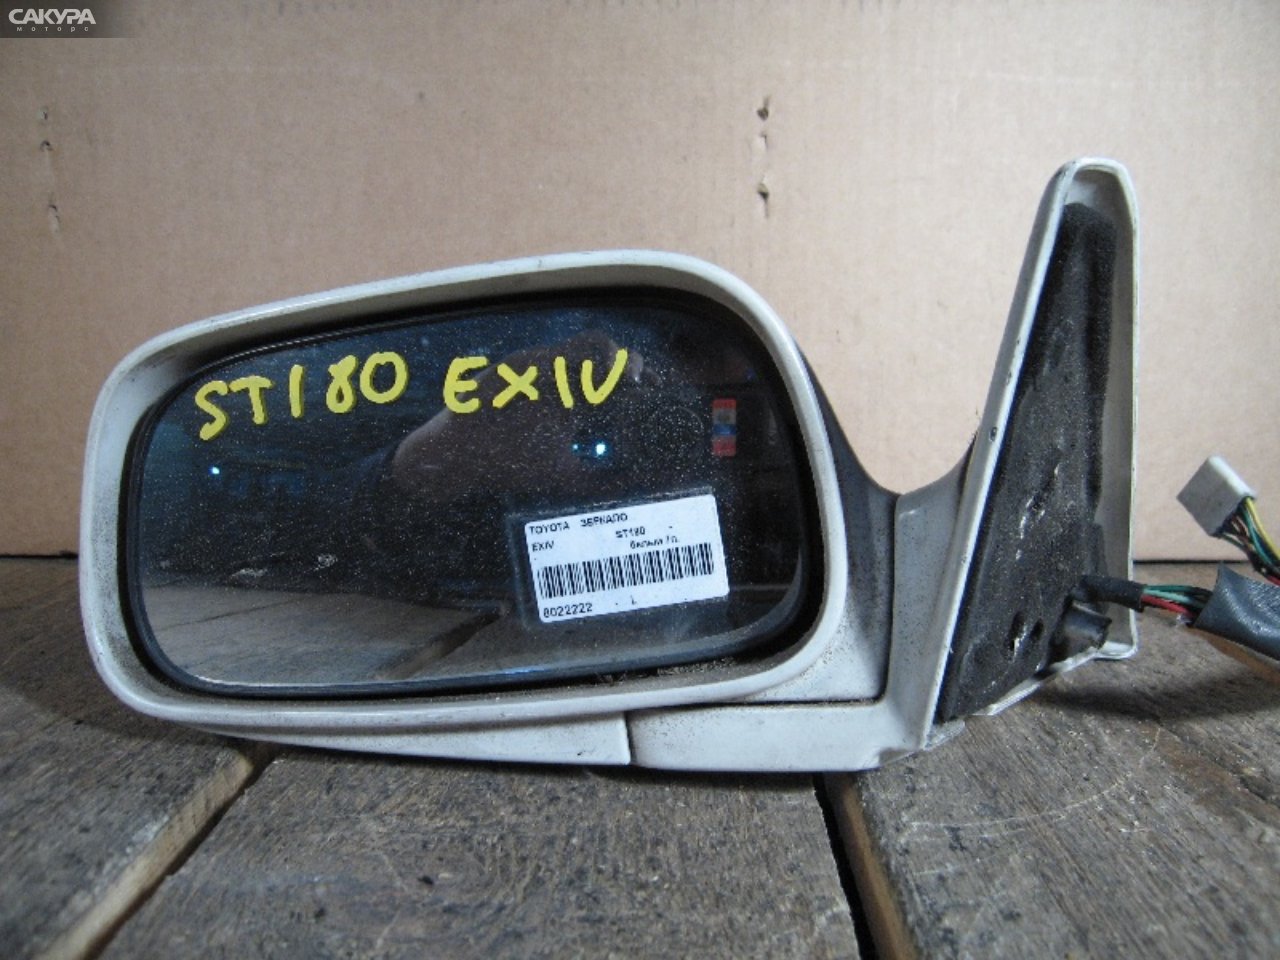 Зеркало боковое левое Toyota Corona Exiv ST180: купить в Сакура Абакан.